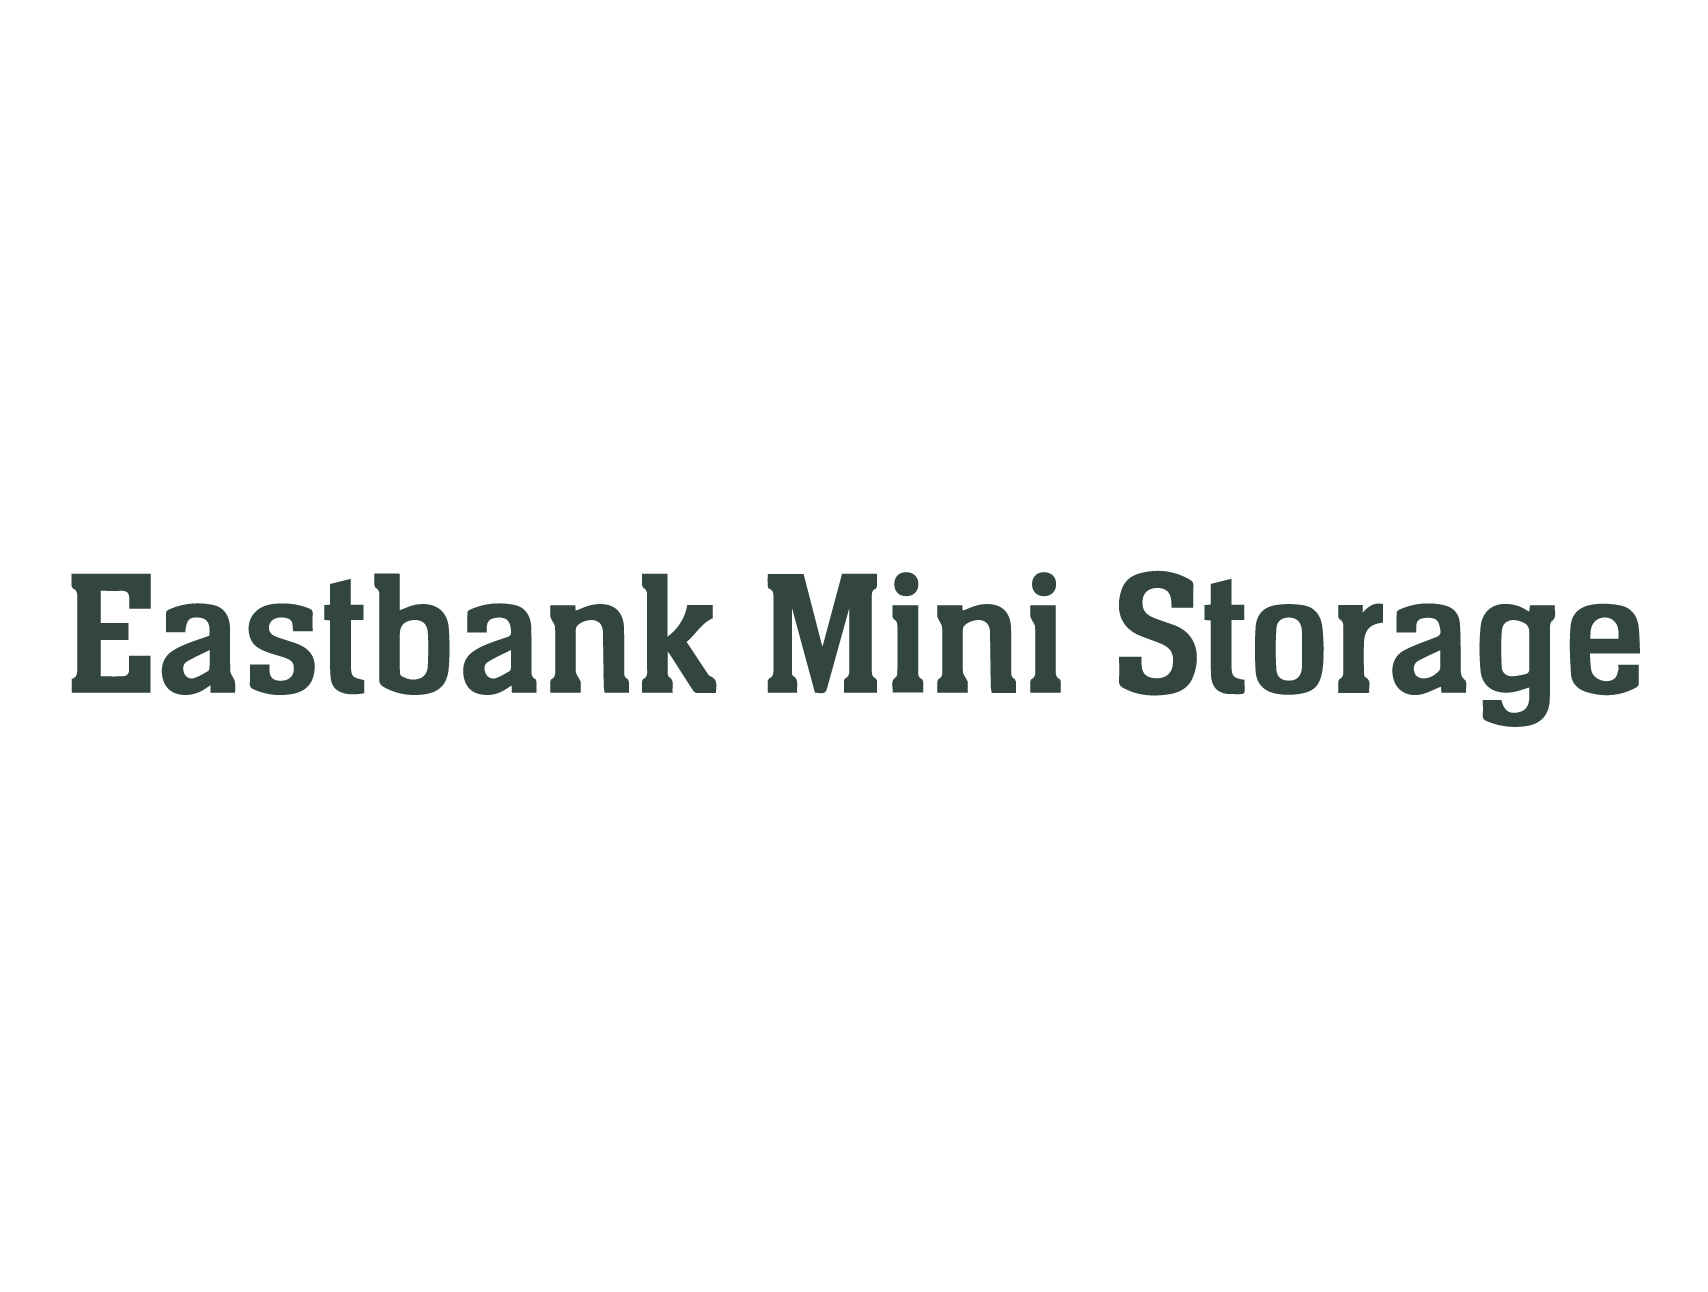 eastbank mini storage logo